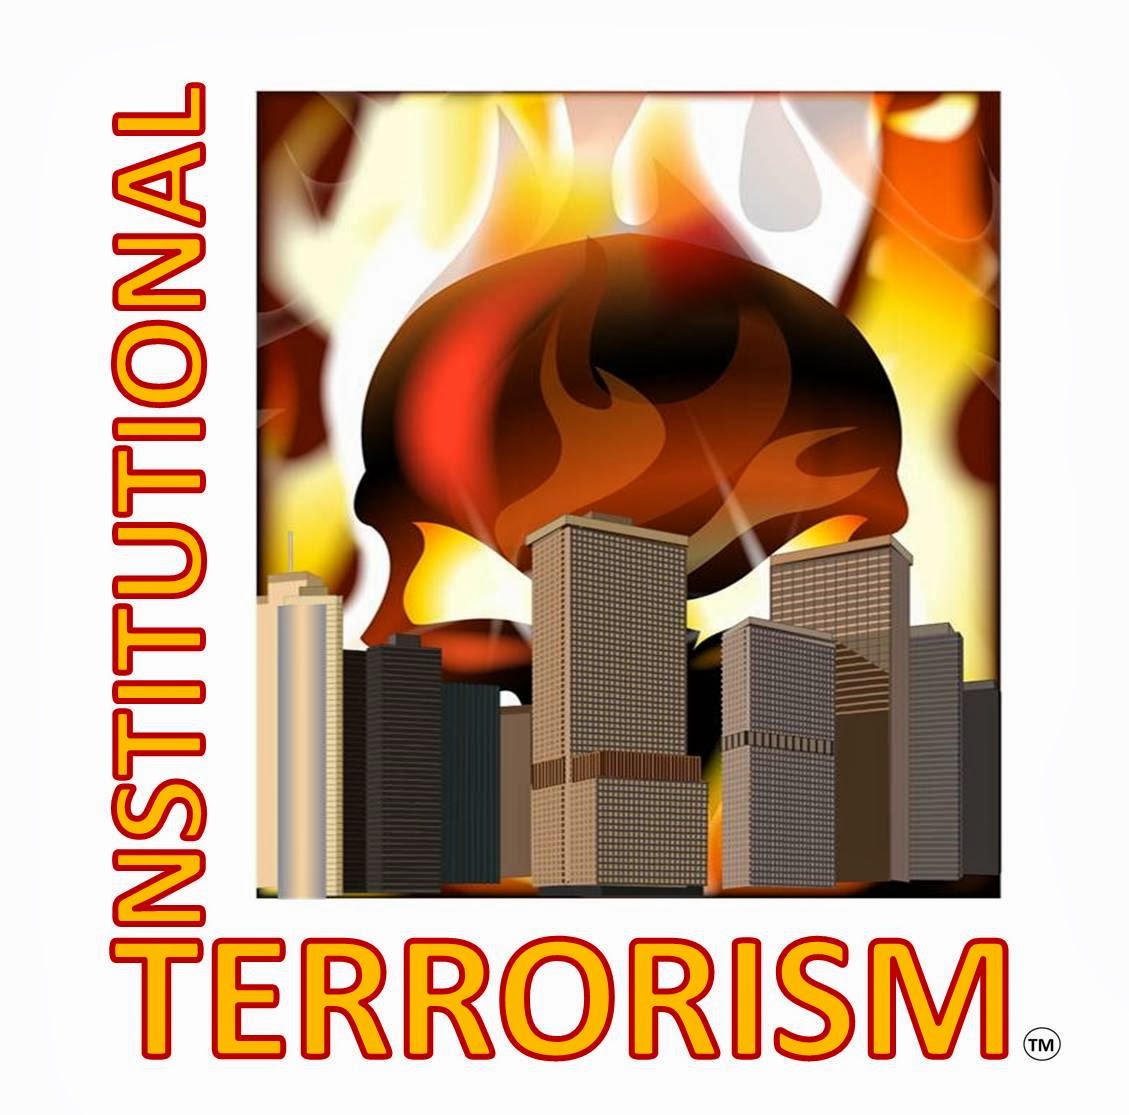 InstitutionalTerrorism - Products